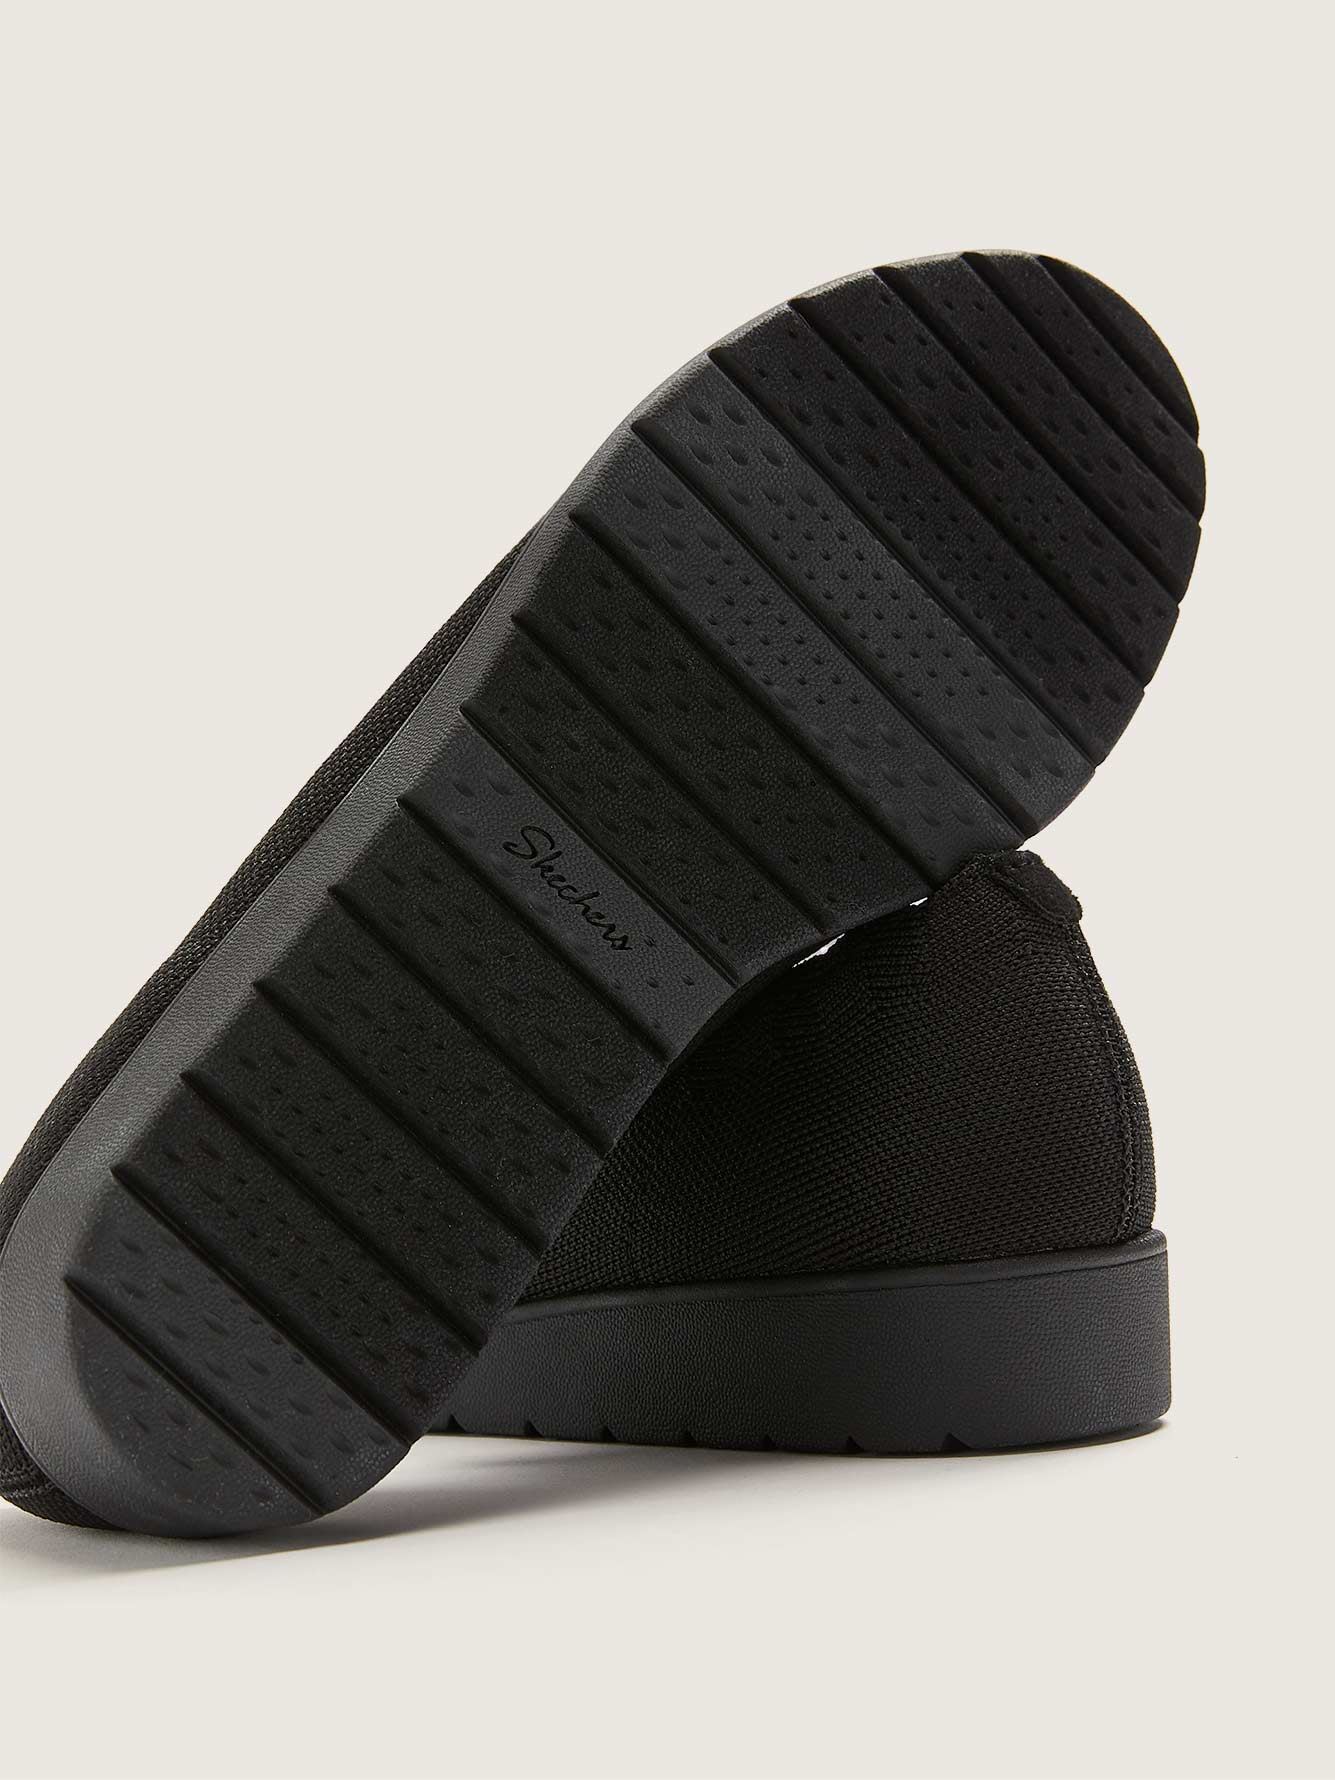 Chaussures à talon compensé Cleo Flex, pied large - Skechers